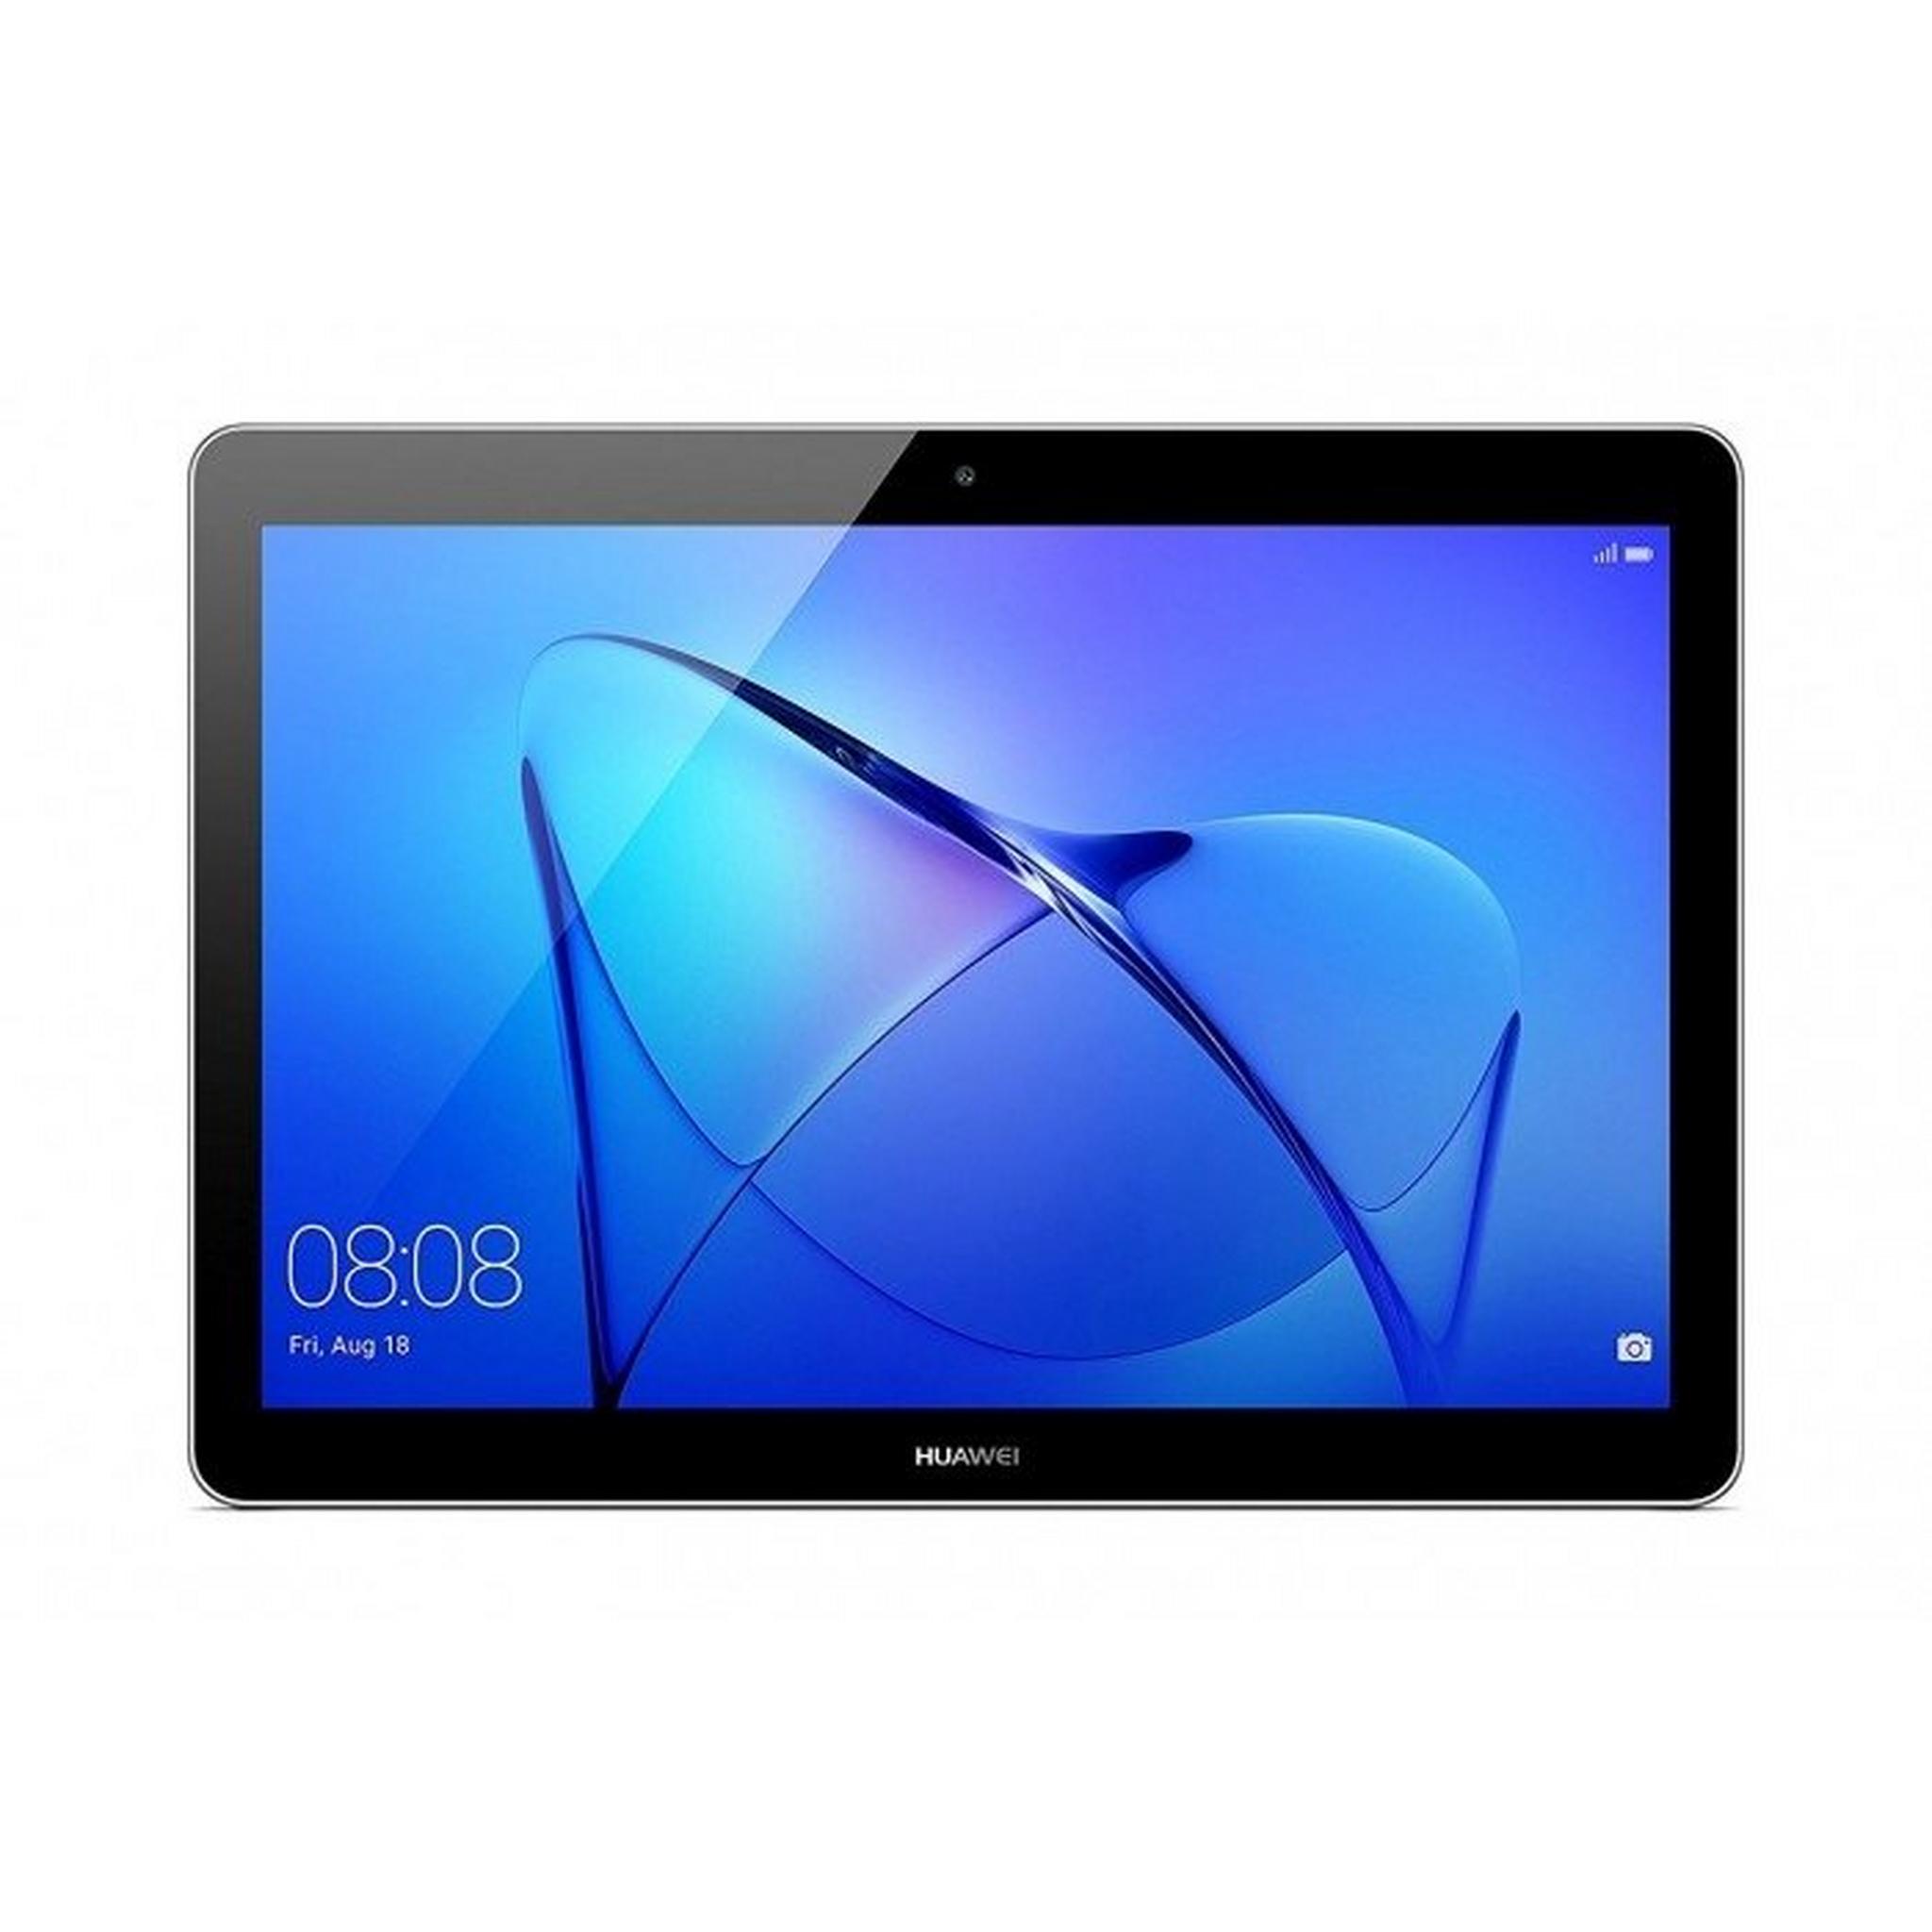 Huawei MediaPad T3 2GB RAM 9.6-inch Tablet – Grey